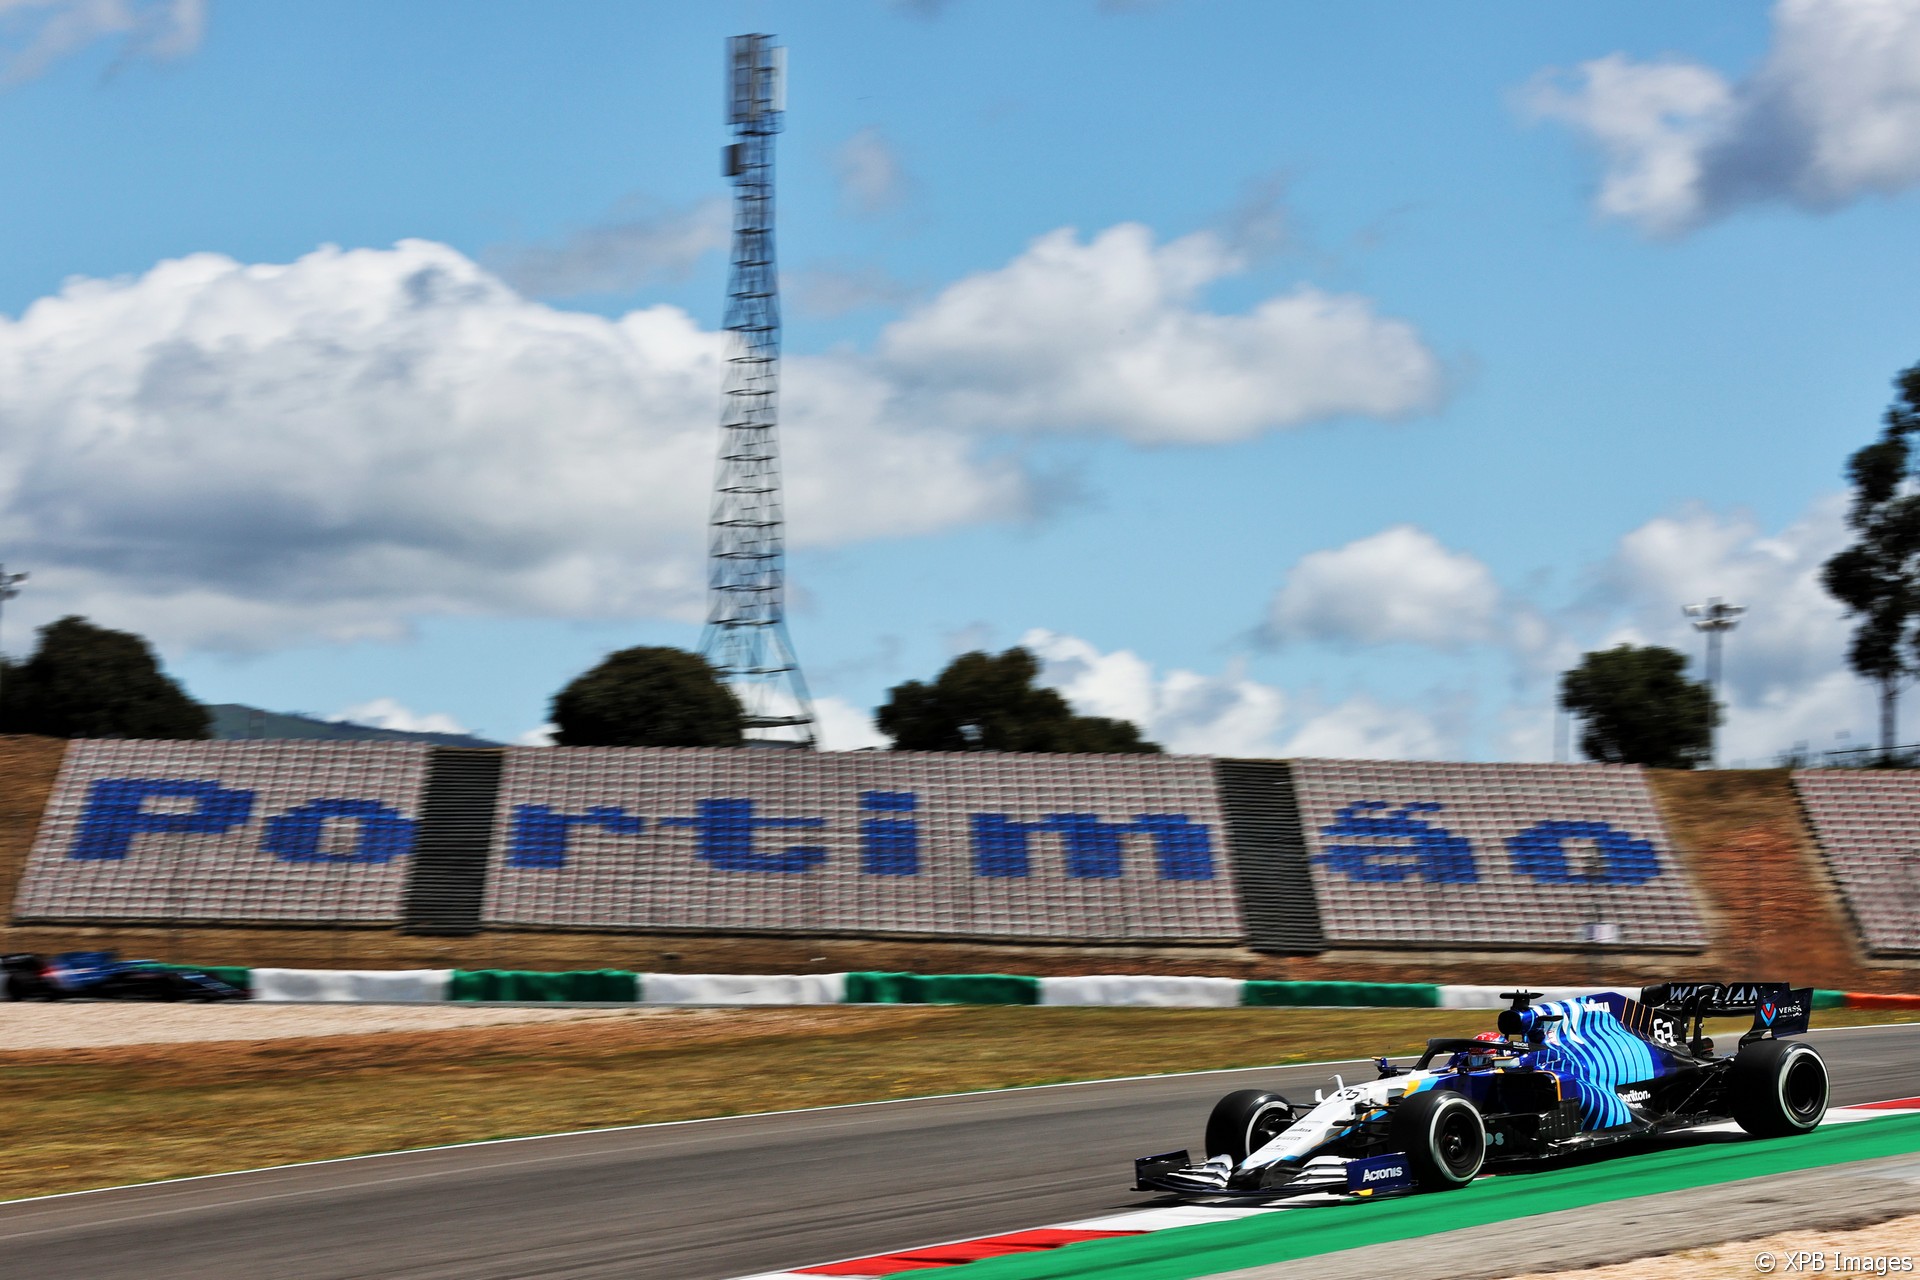 Nicholas Latifi, Williams, Autodromo do Algarve, 2021